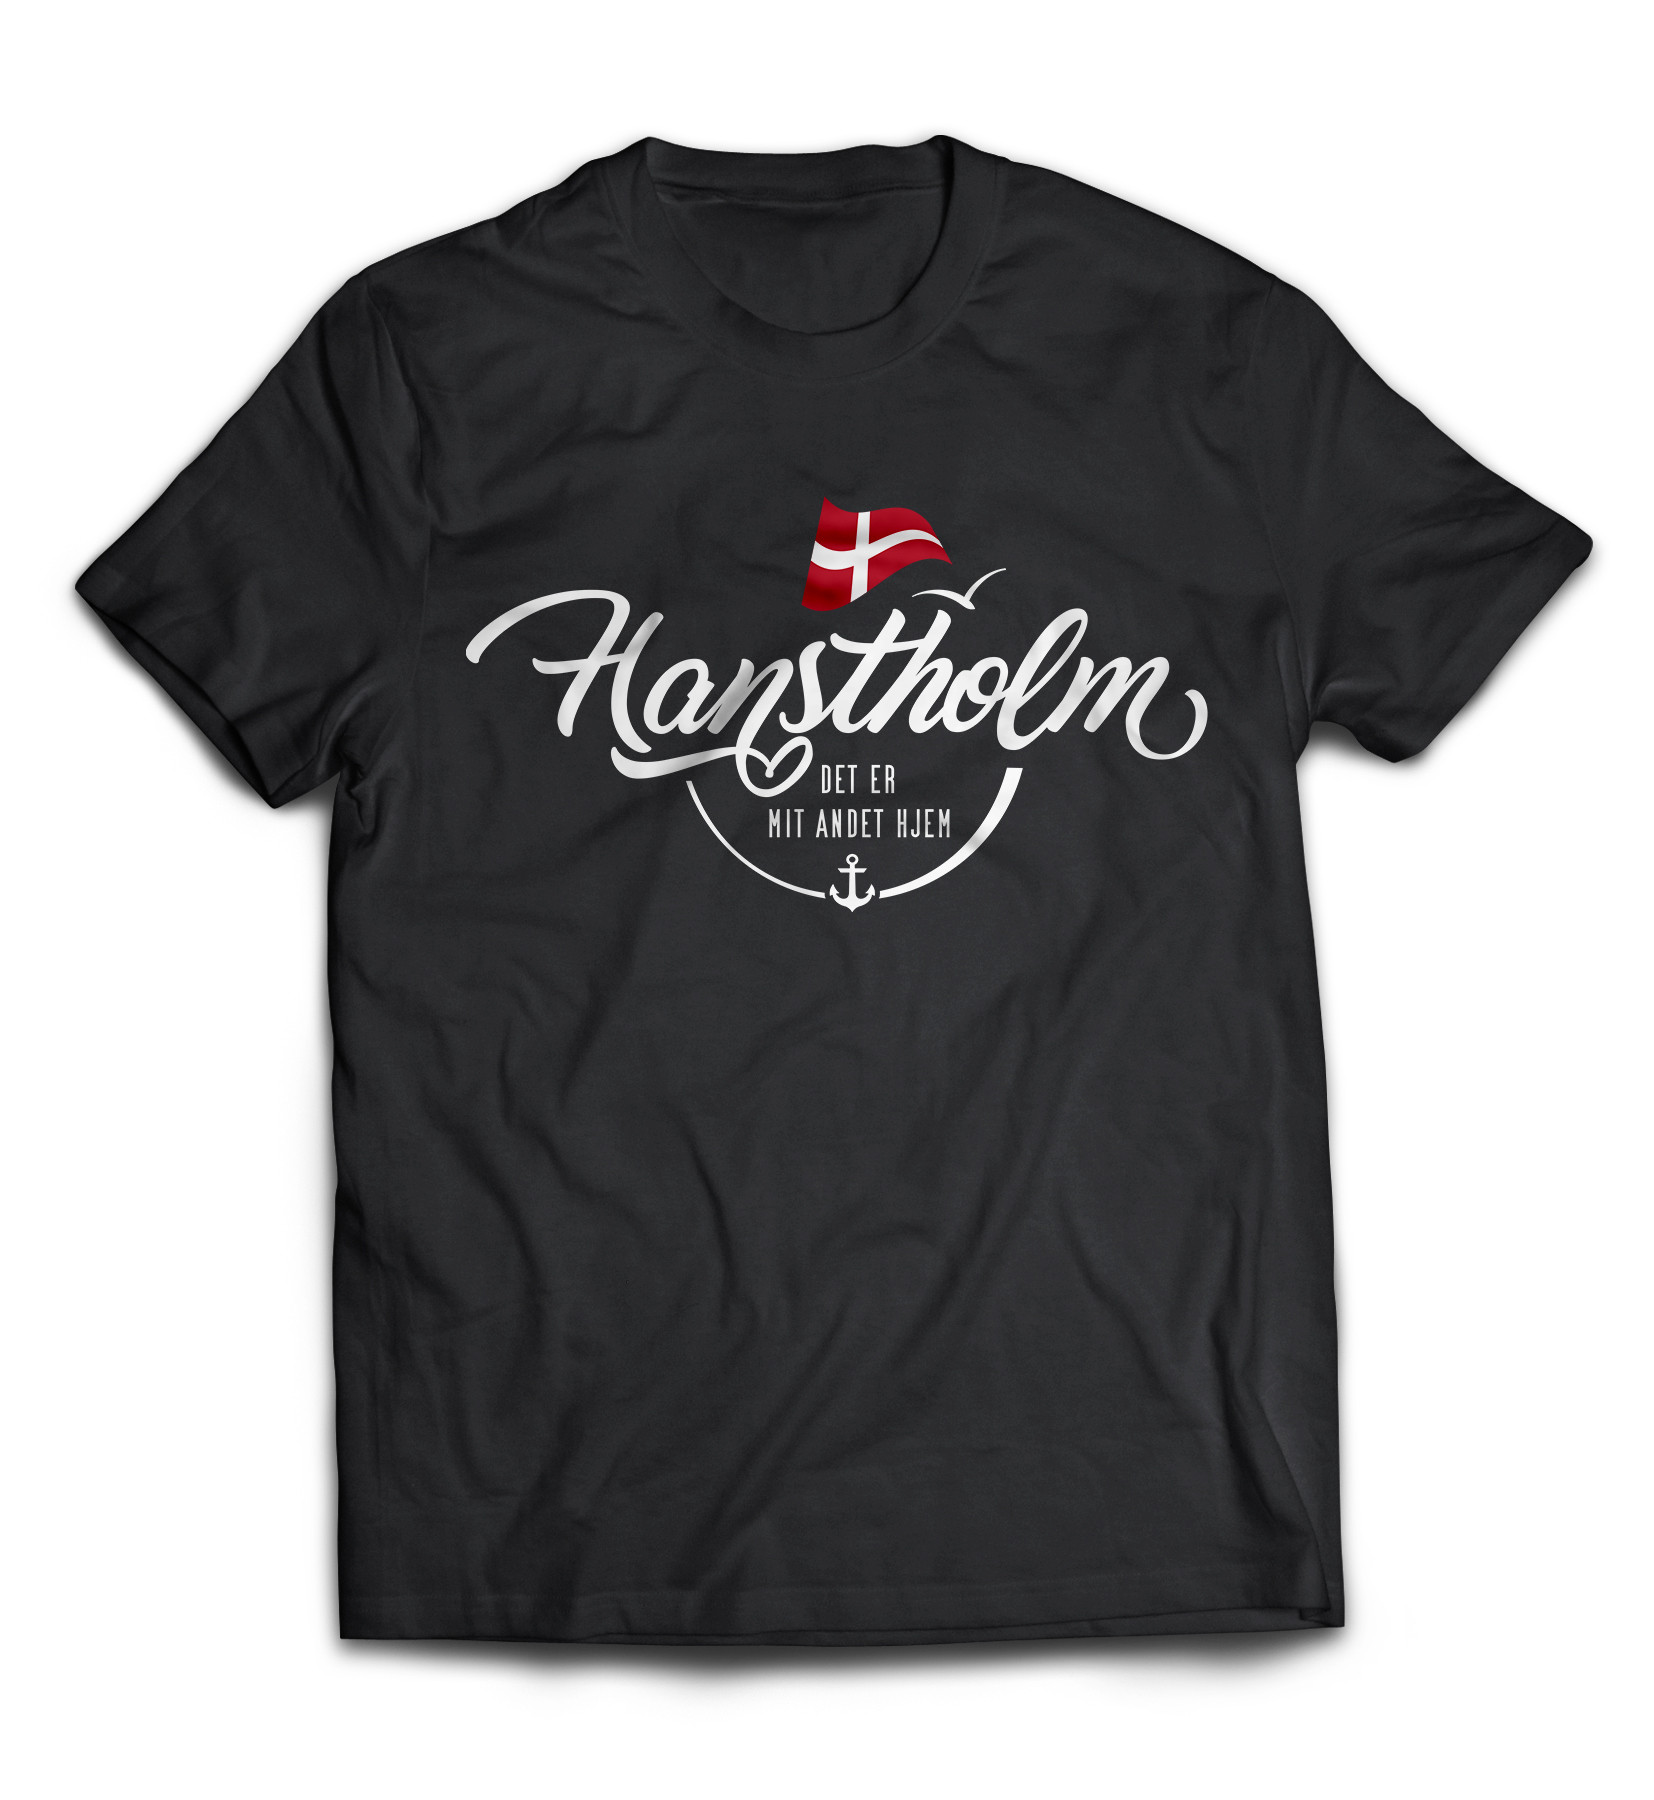 Dänemark - Meine zweite Heimat - T-Shirt "Hanstholm"